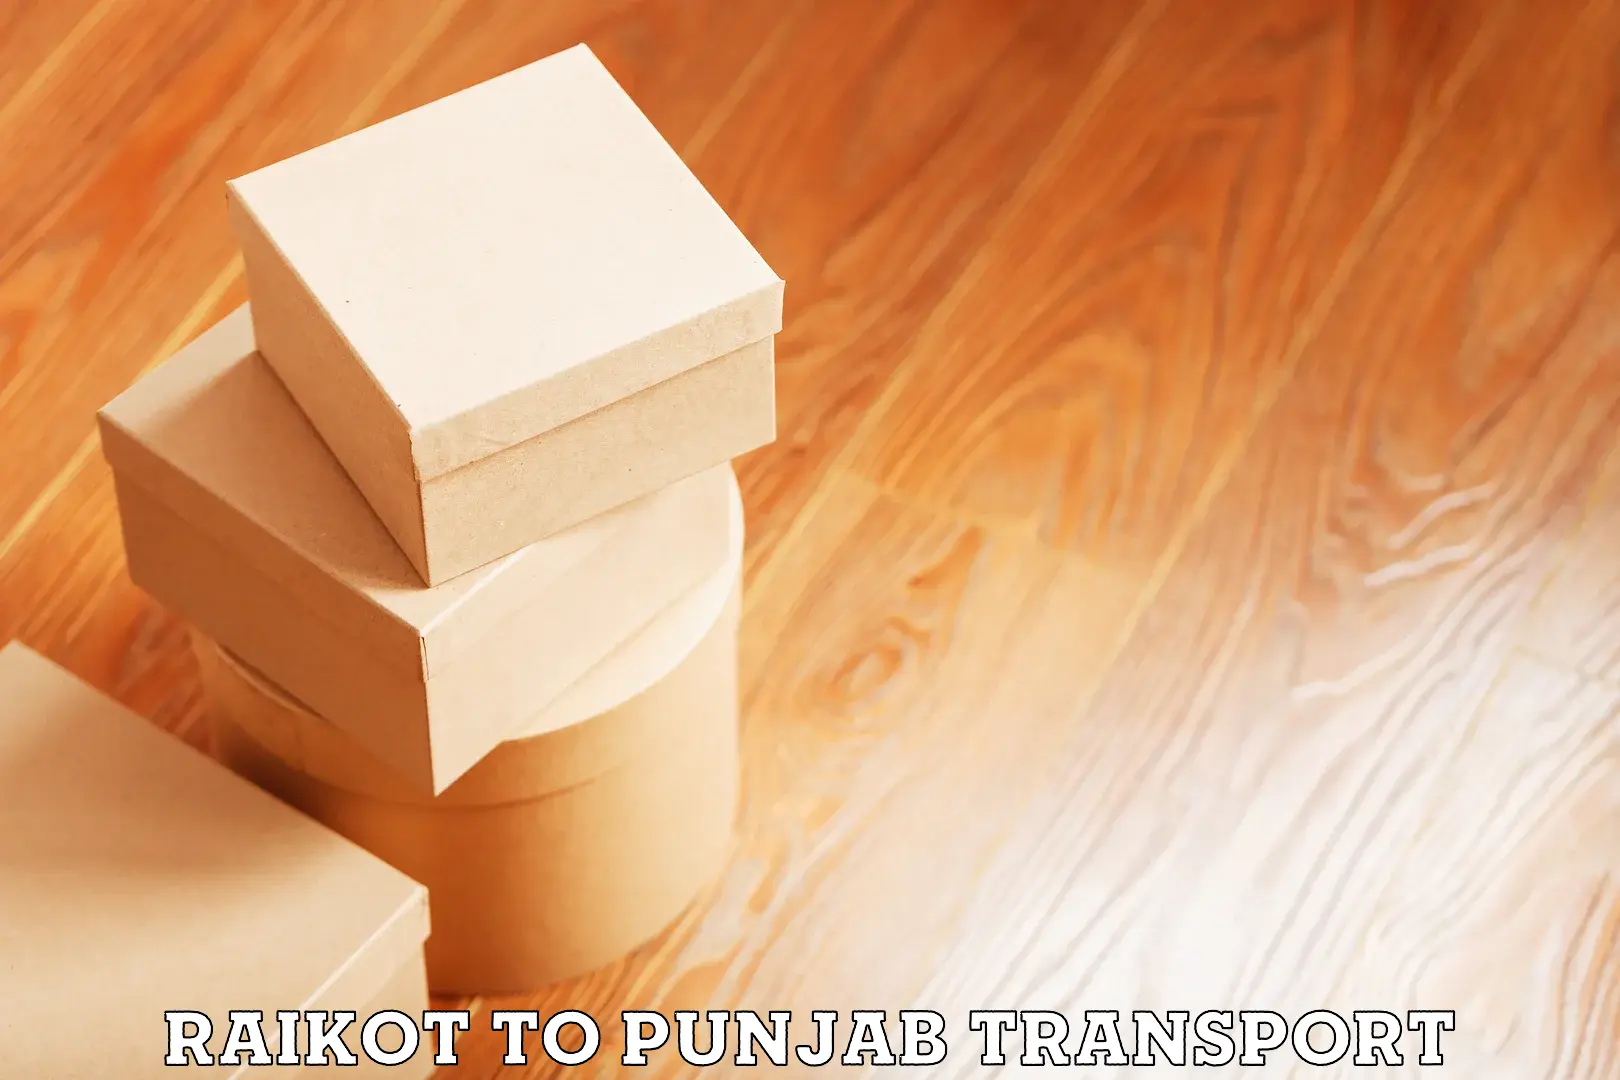 Cargo transport services Raikot to Punjab